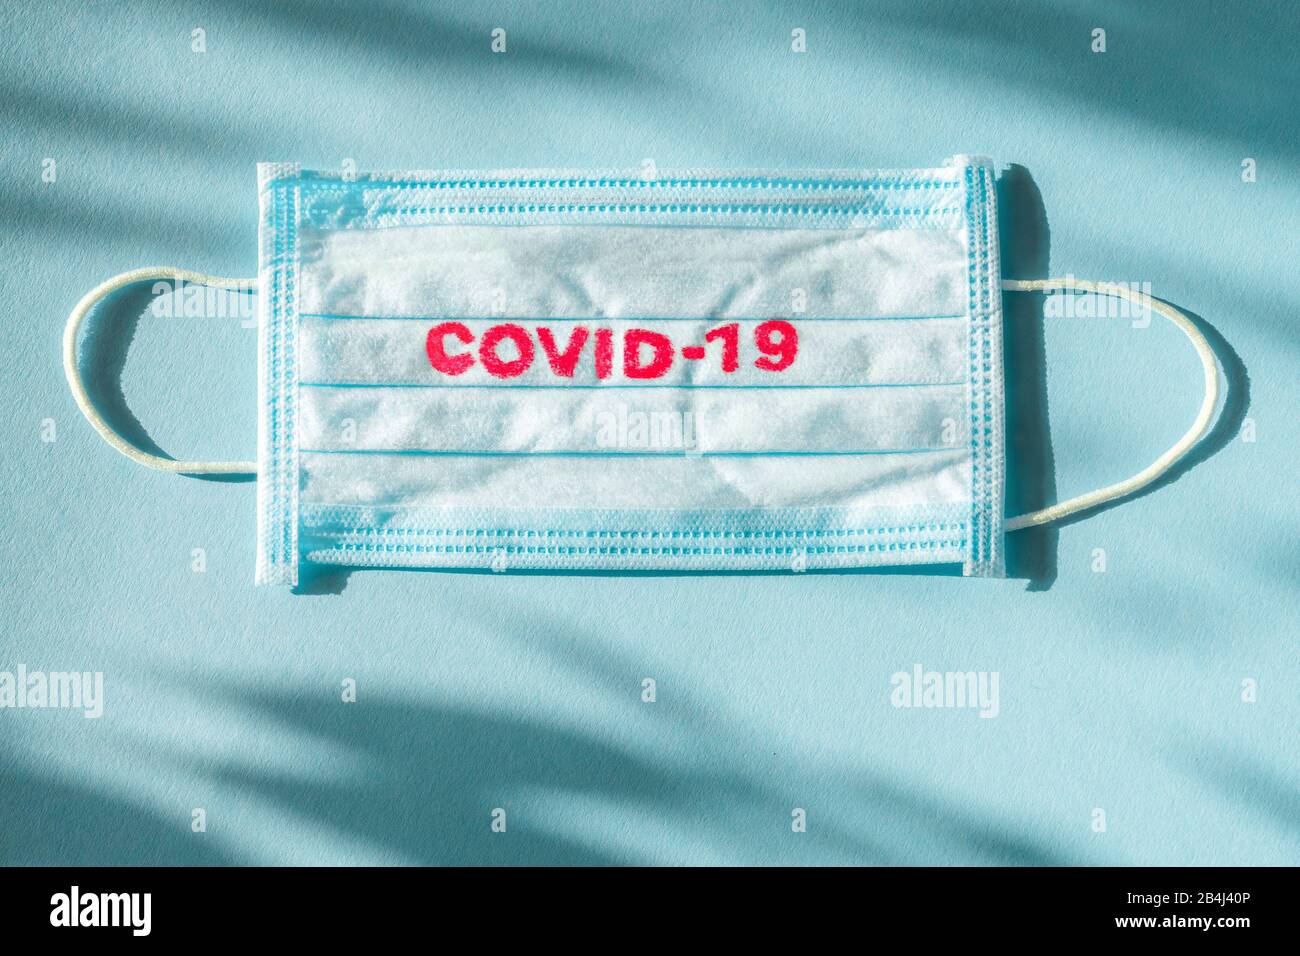 Covid-19 - Wuhan Novel la pneumonie à Coronavirus reçoit le nom officiel DE L'OMS: COVID-19. Pansement jetable sur le visage. Antécédents en matière de santé. Masque médical jetable bleu avec imprimé covid-19 Banque D'Images